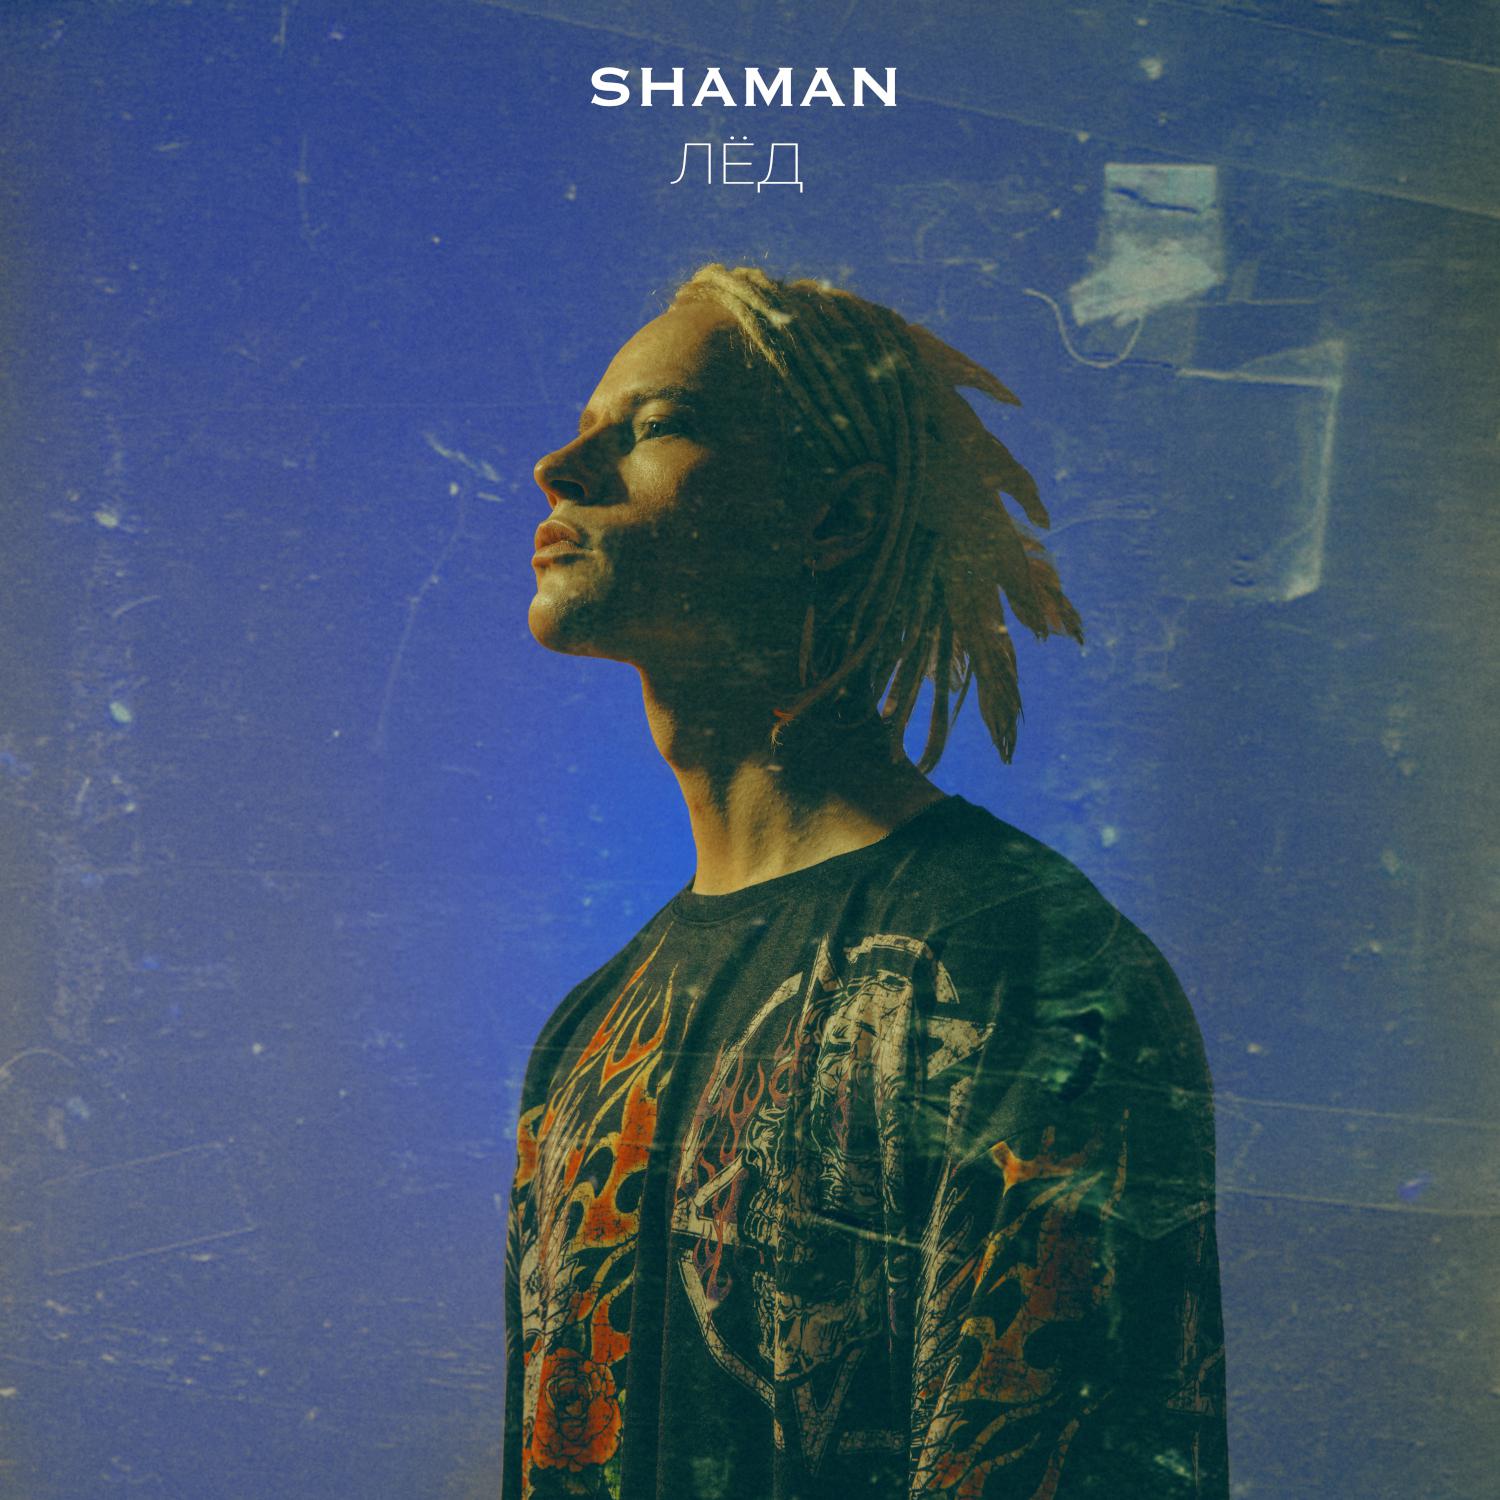 Шаман певец реквием слушать. Shaman (певец). Shaman певец обложка. Shaman лед.